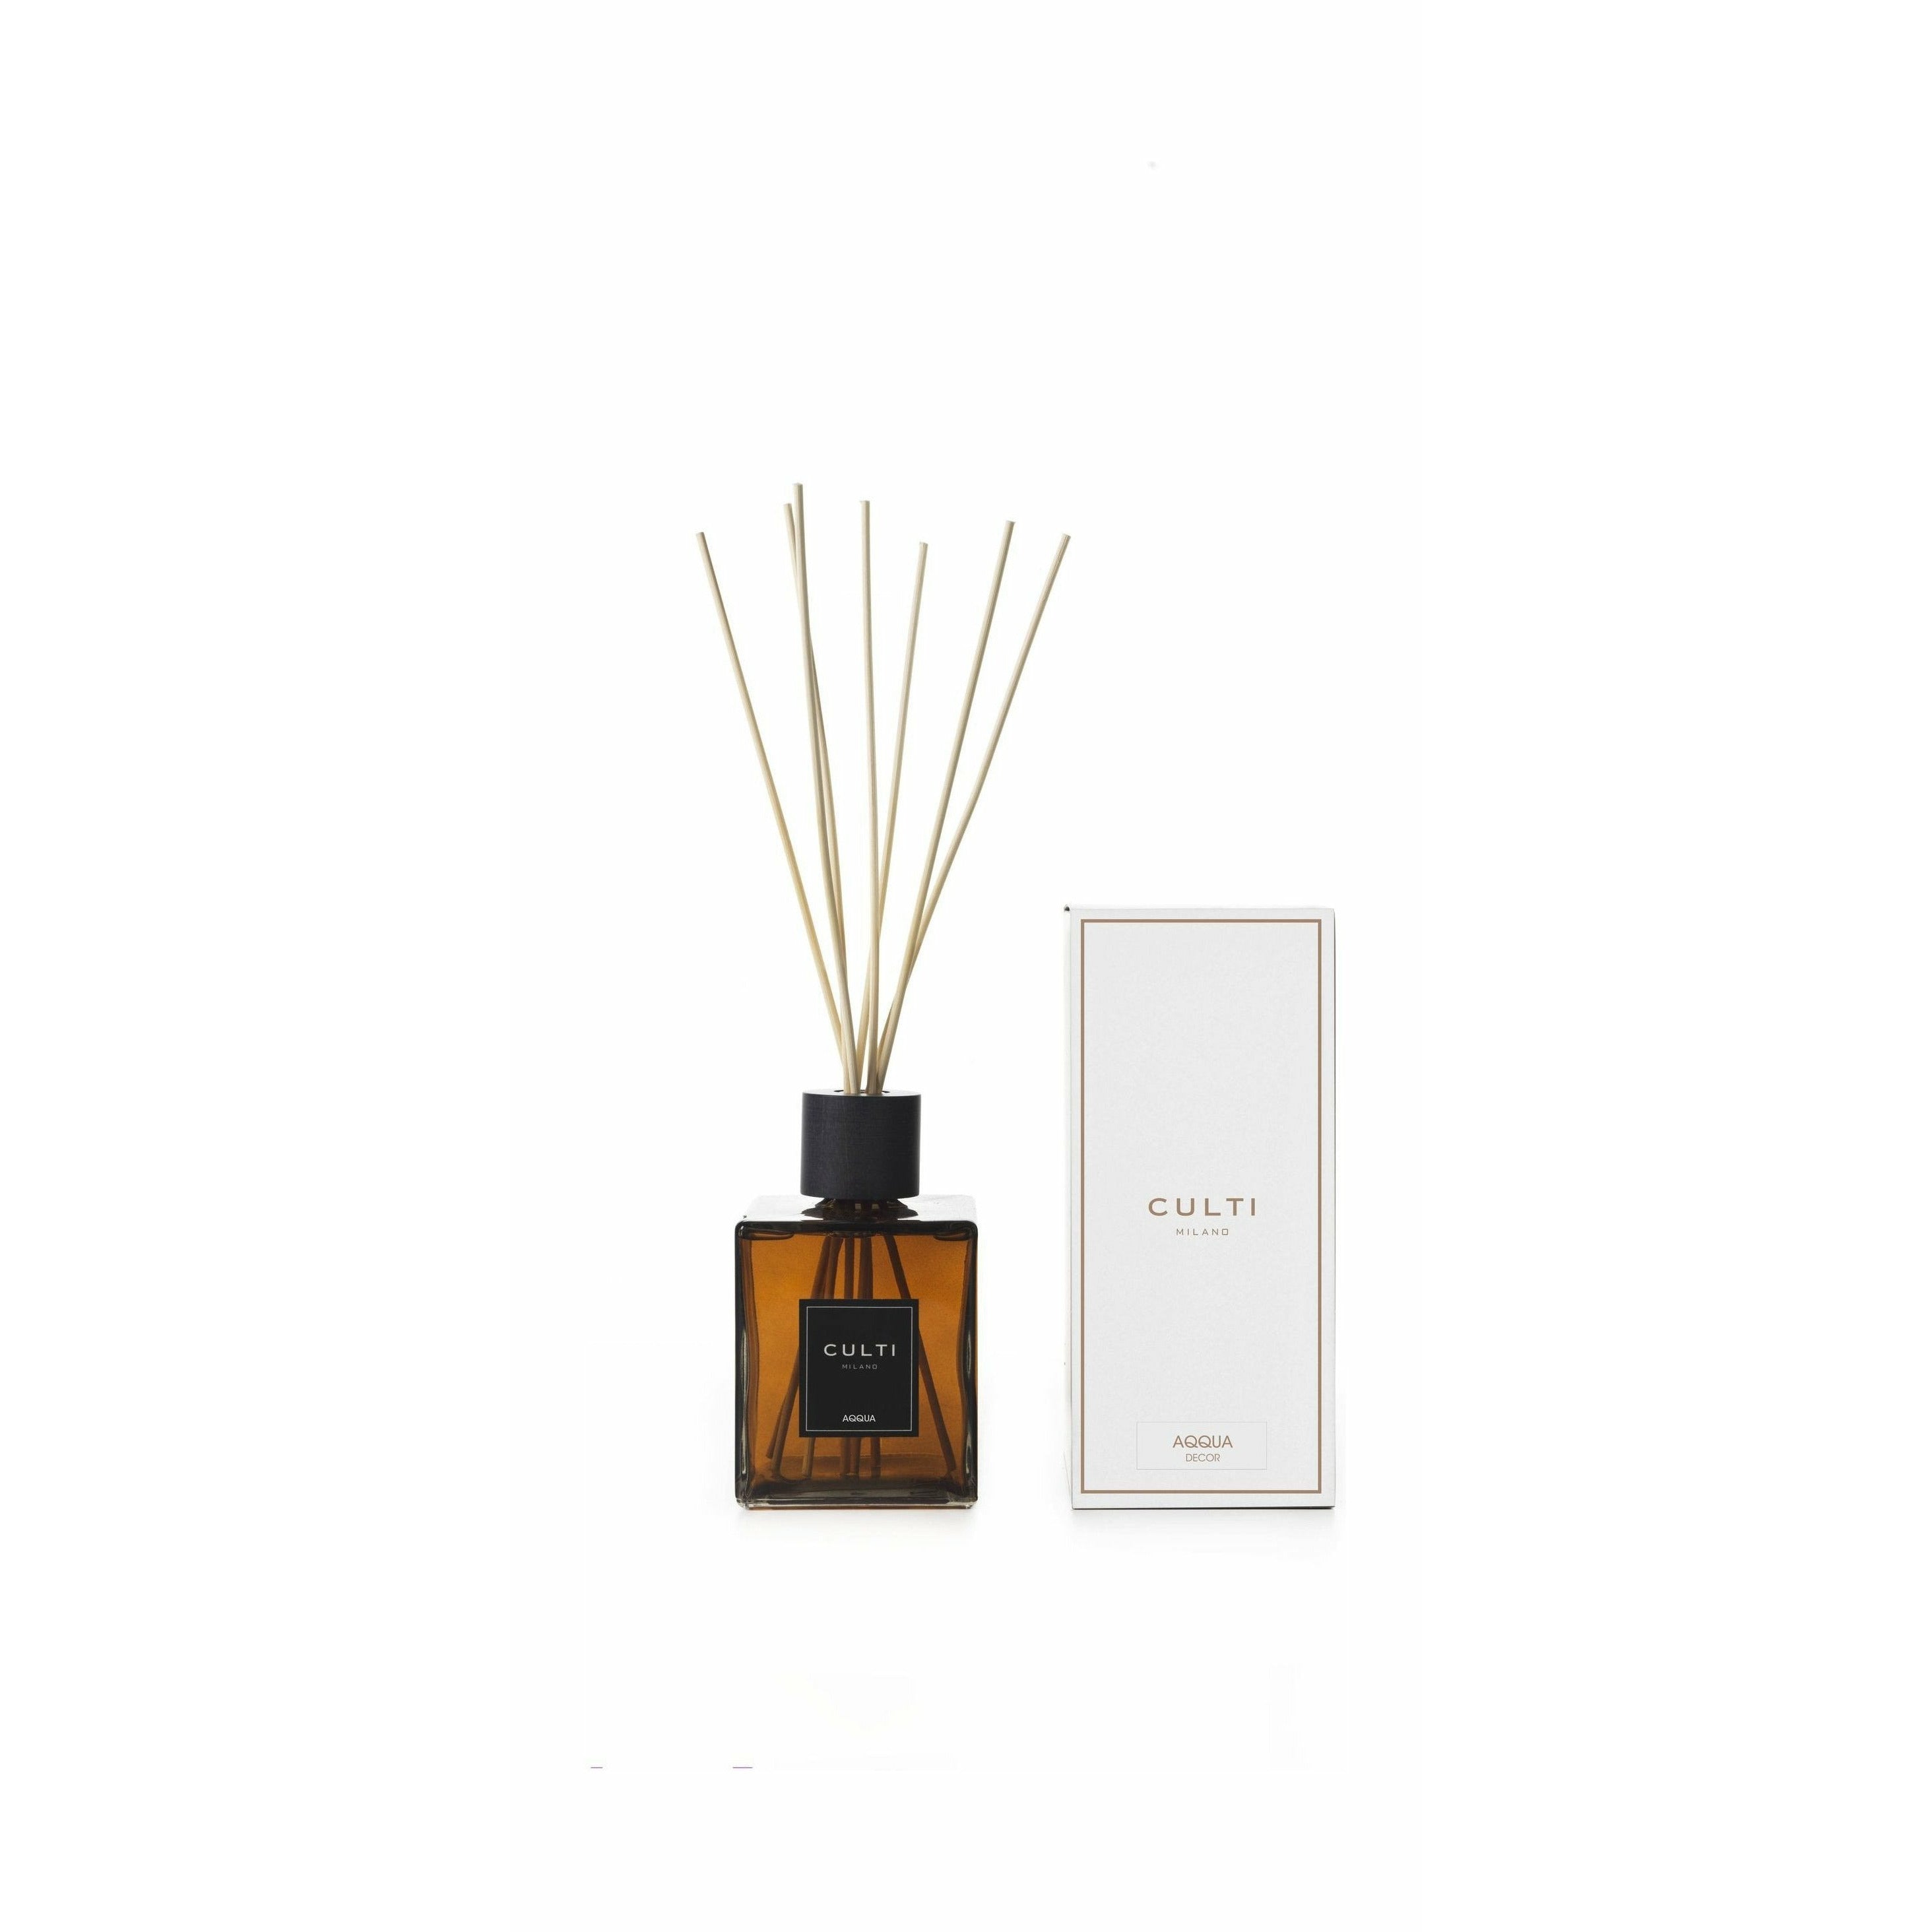 Culti Milano Decor Classic Fragrance Diffuser Aqqua, 1 L